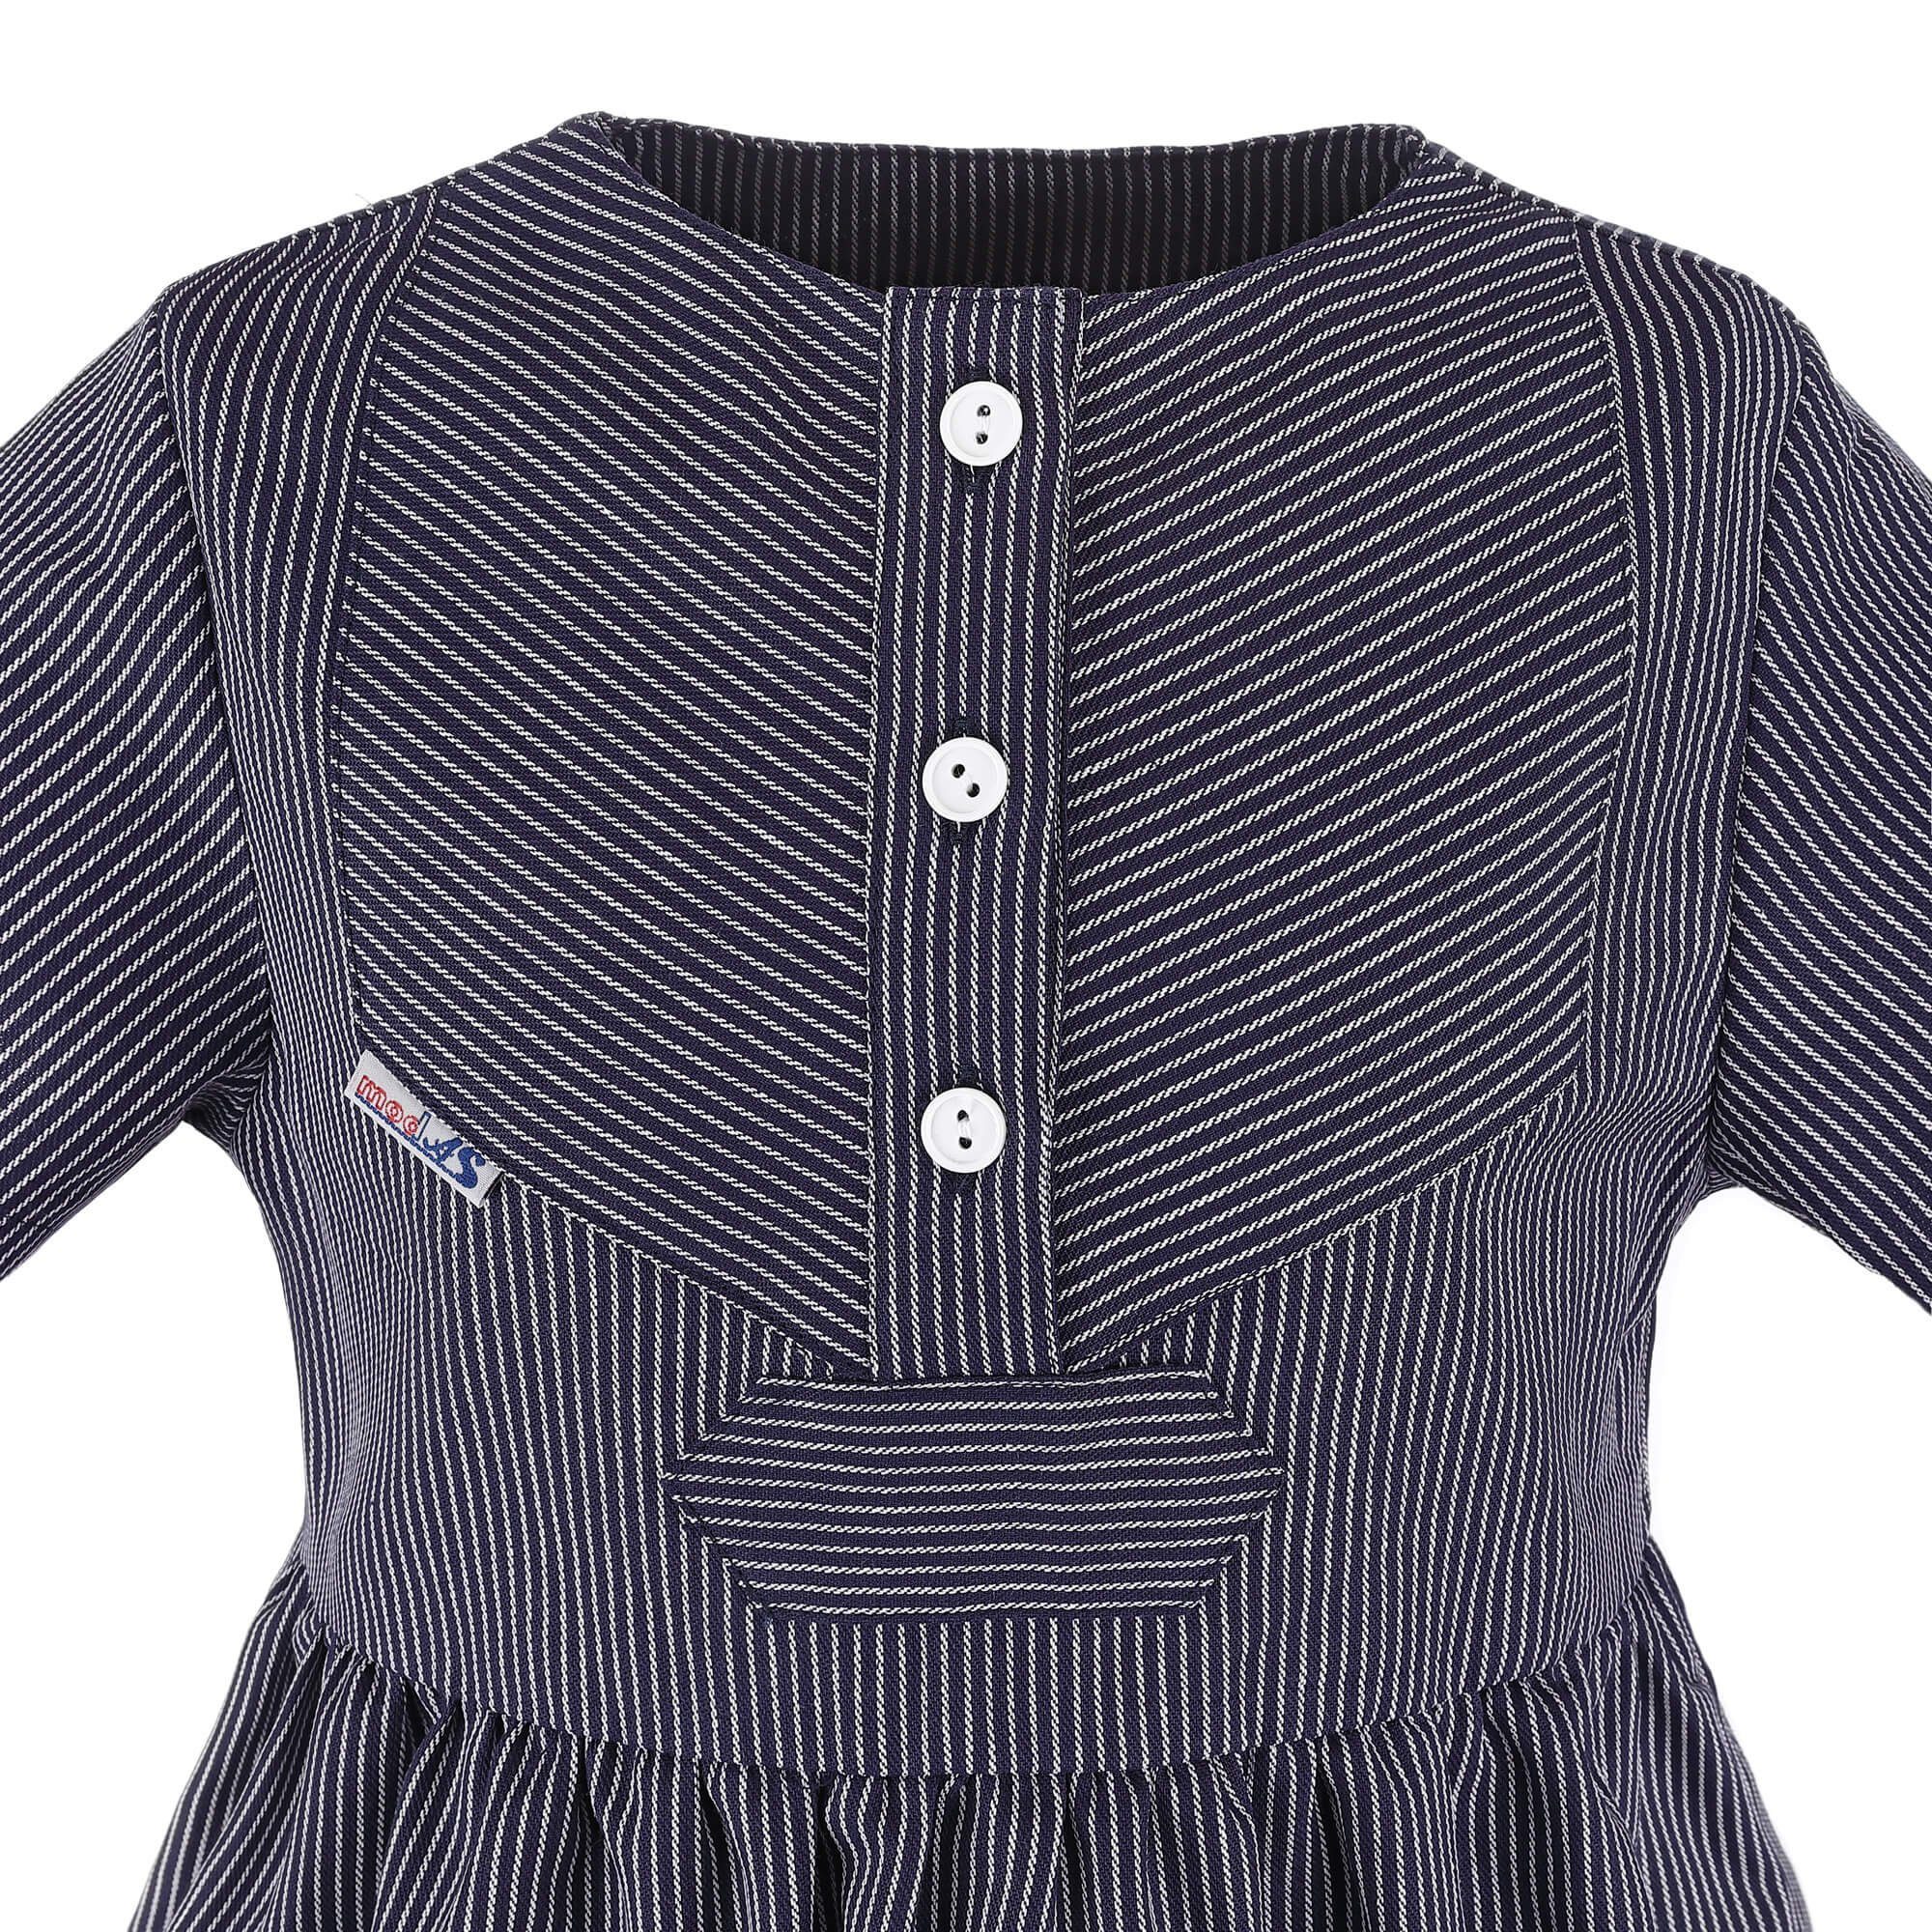 Blau (11) modAS Fischerkleid schmaler Gestreiftes - Kleid Sommerkleid Streifen Kinder Finkenwerder-Stil Klassisch